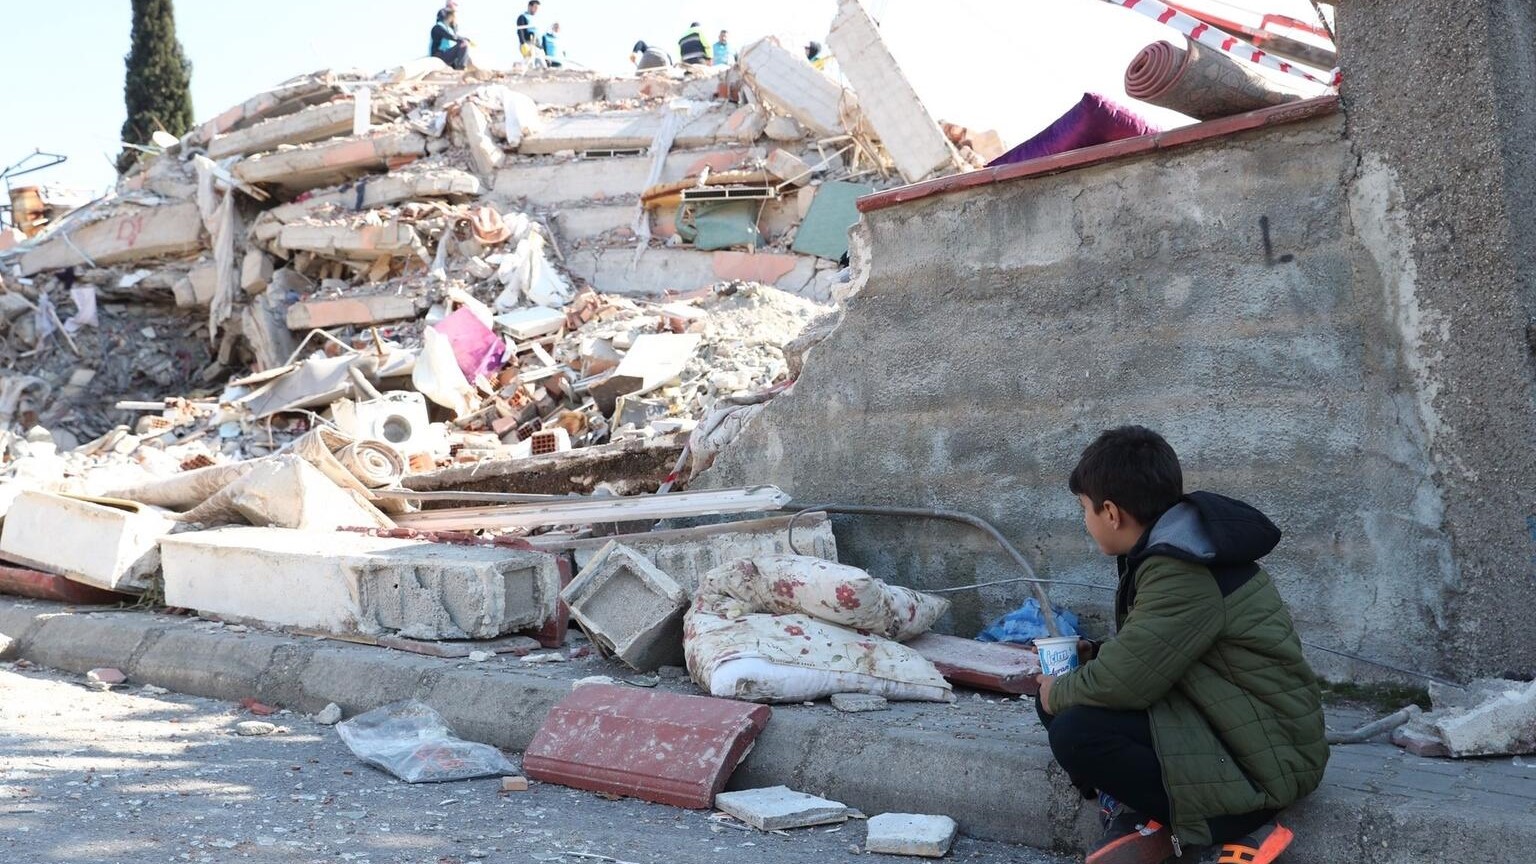 ONU faz apelo de US$ 1 bilhão para auxílio pós-terremoto. As Nações Unidas lançaram um apelo humanitário de US$ 1 bilhão